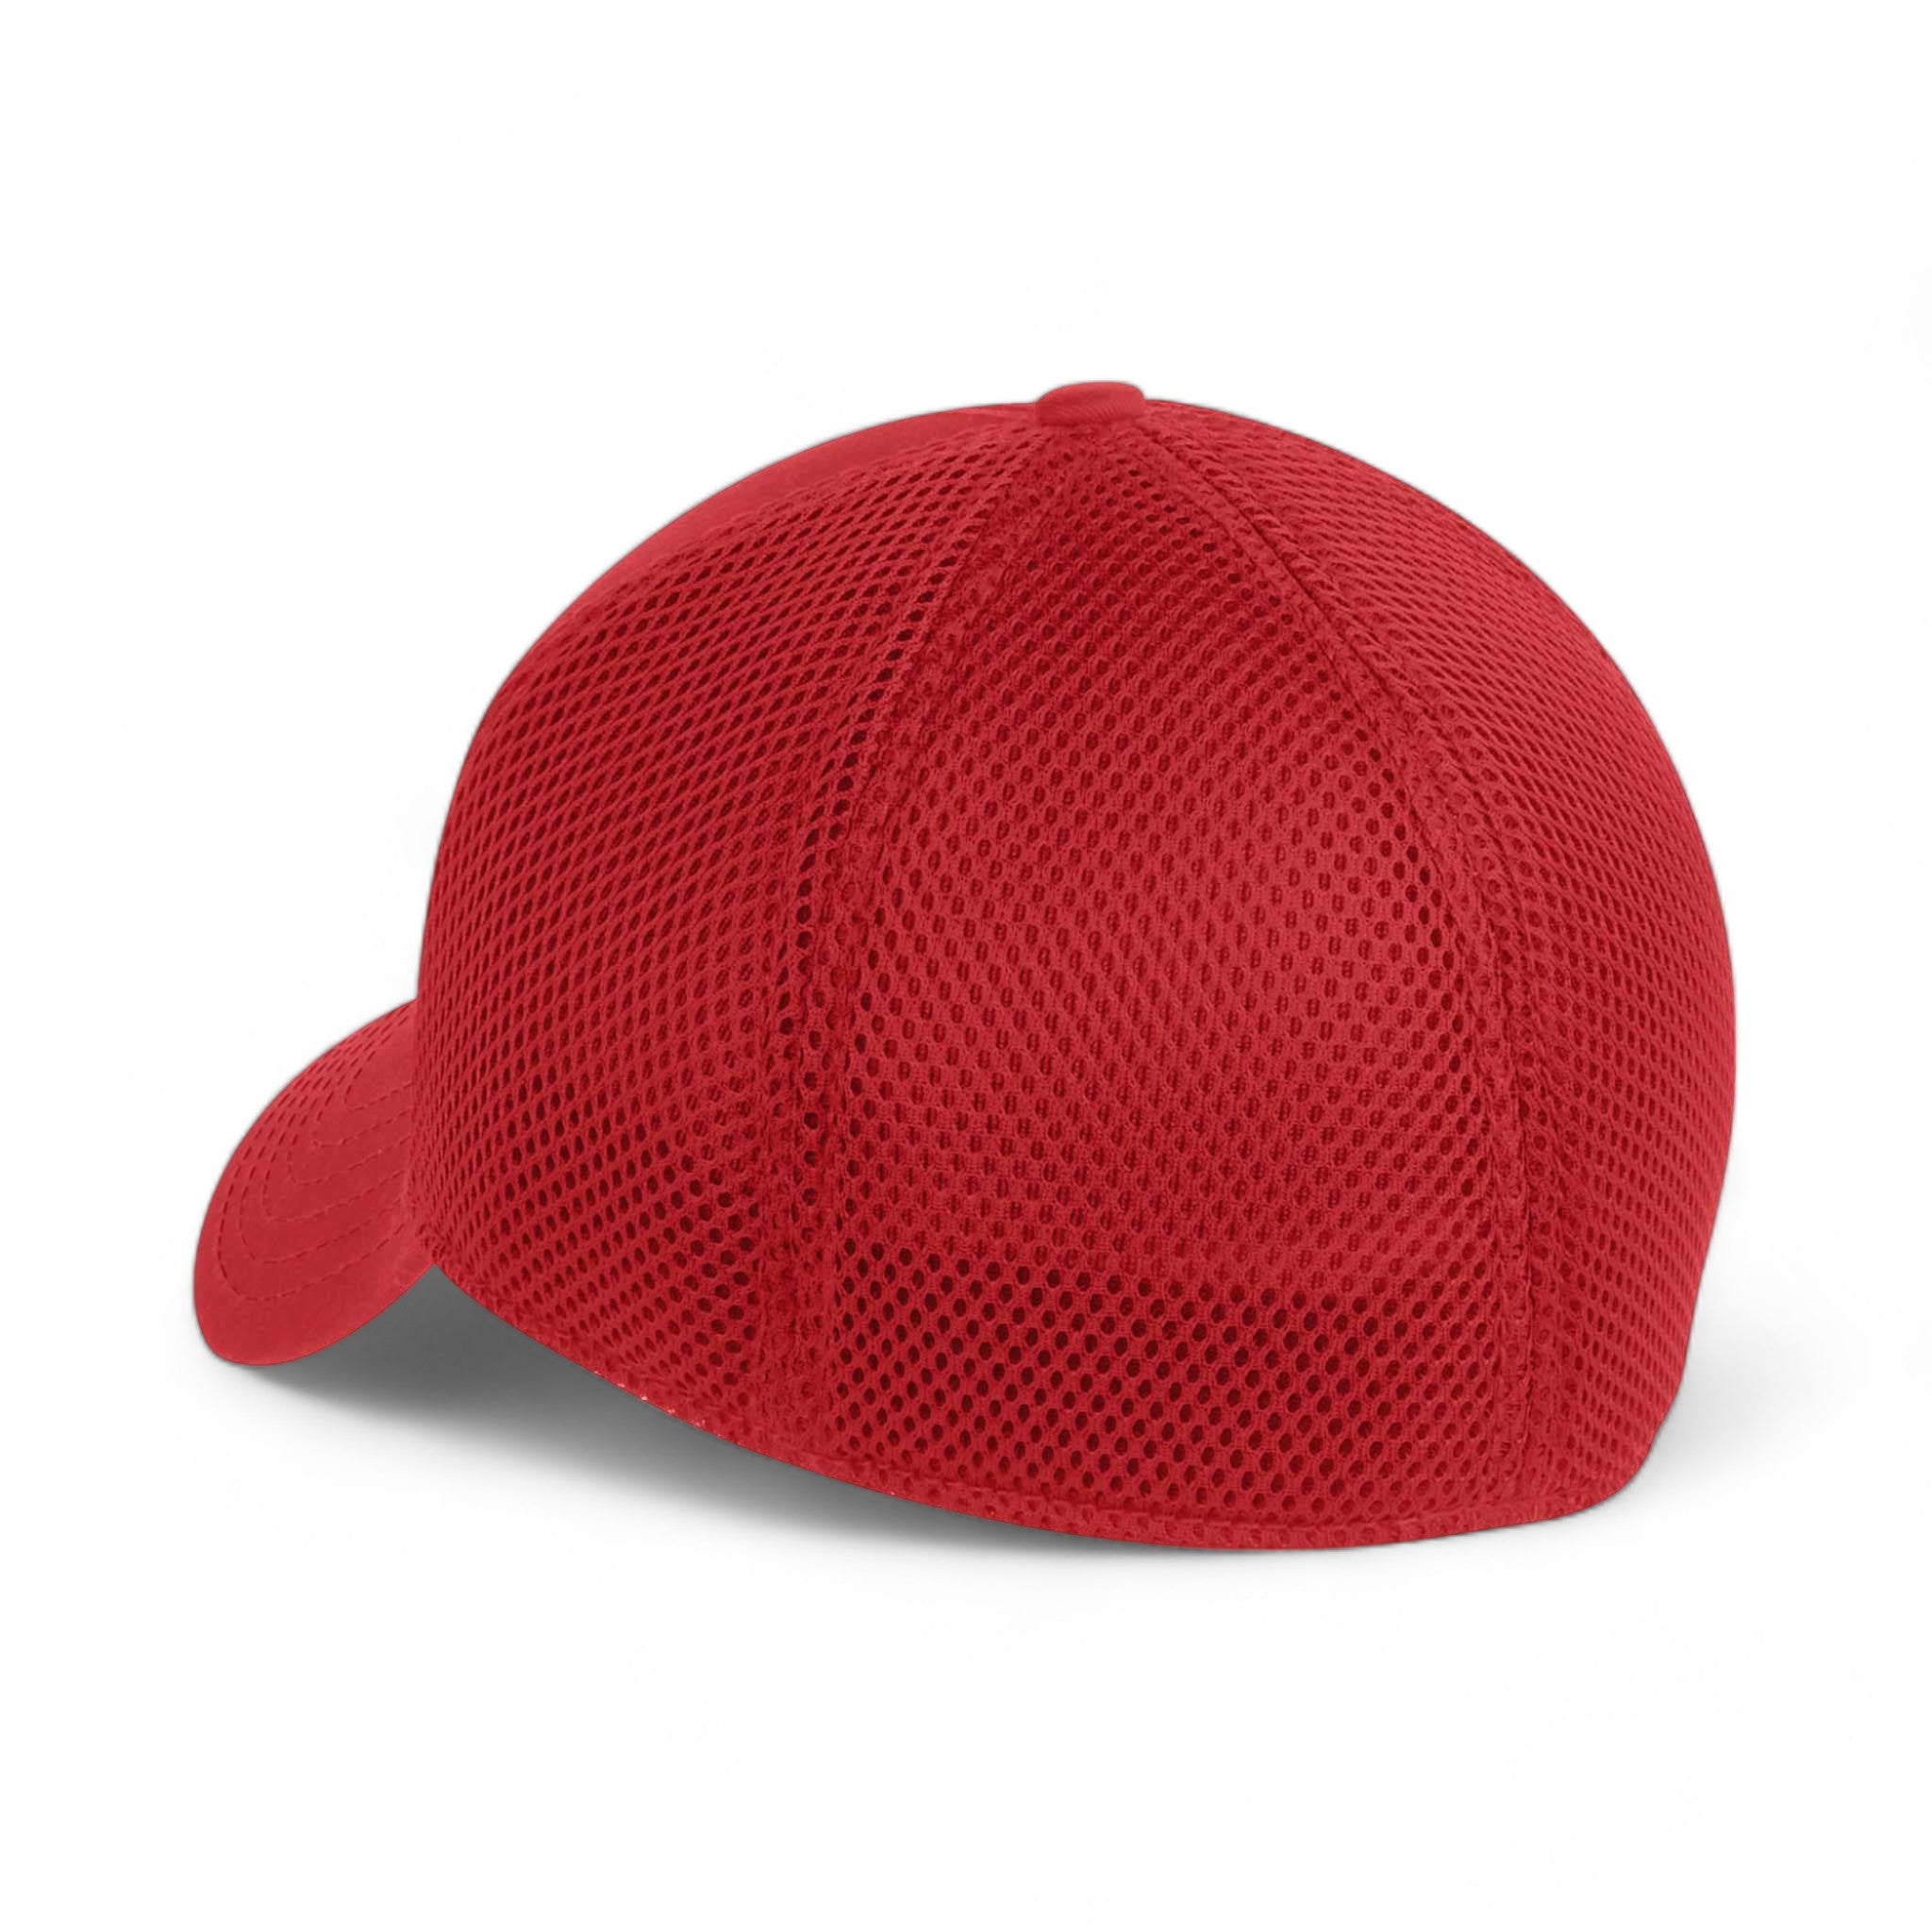 Back view of New Era NE1020 custom hat in scarlet red